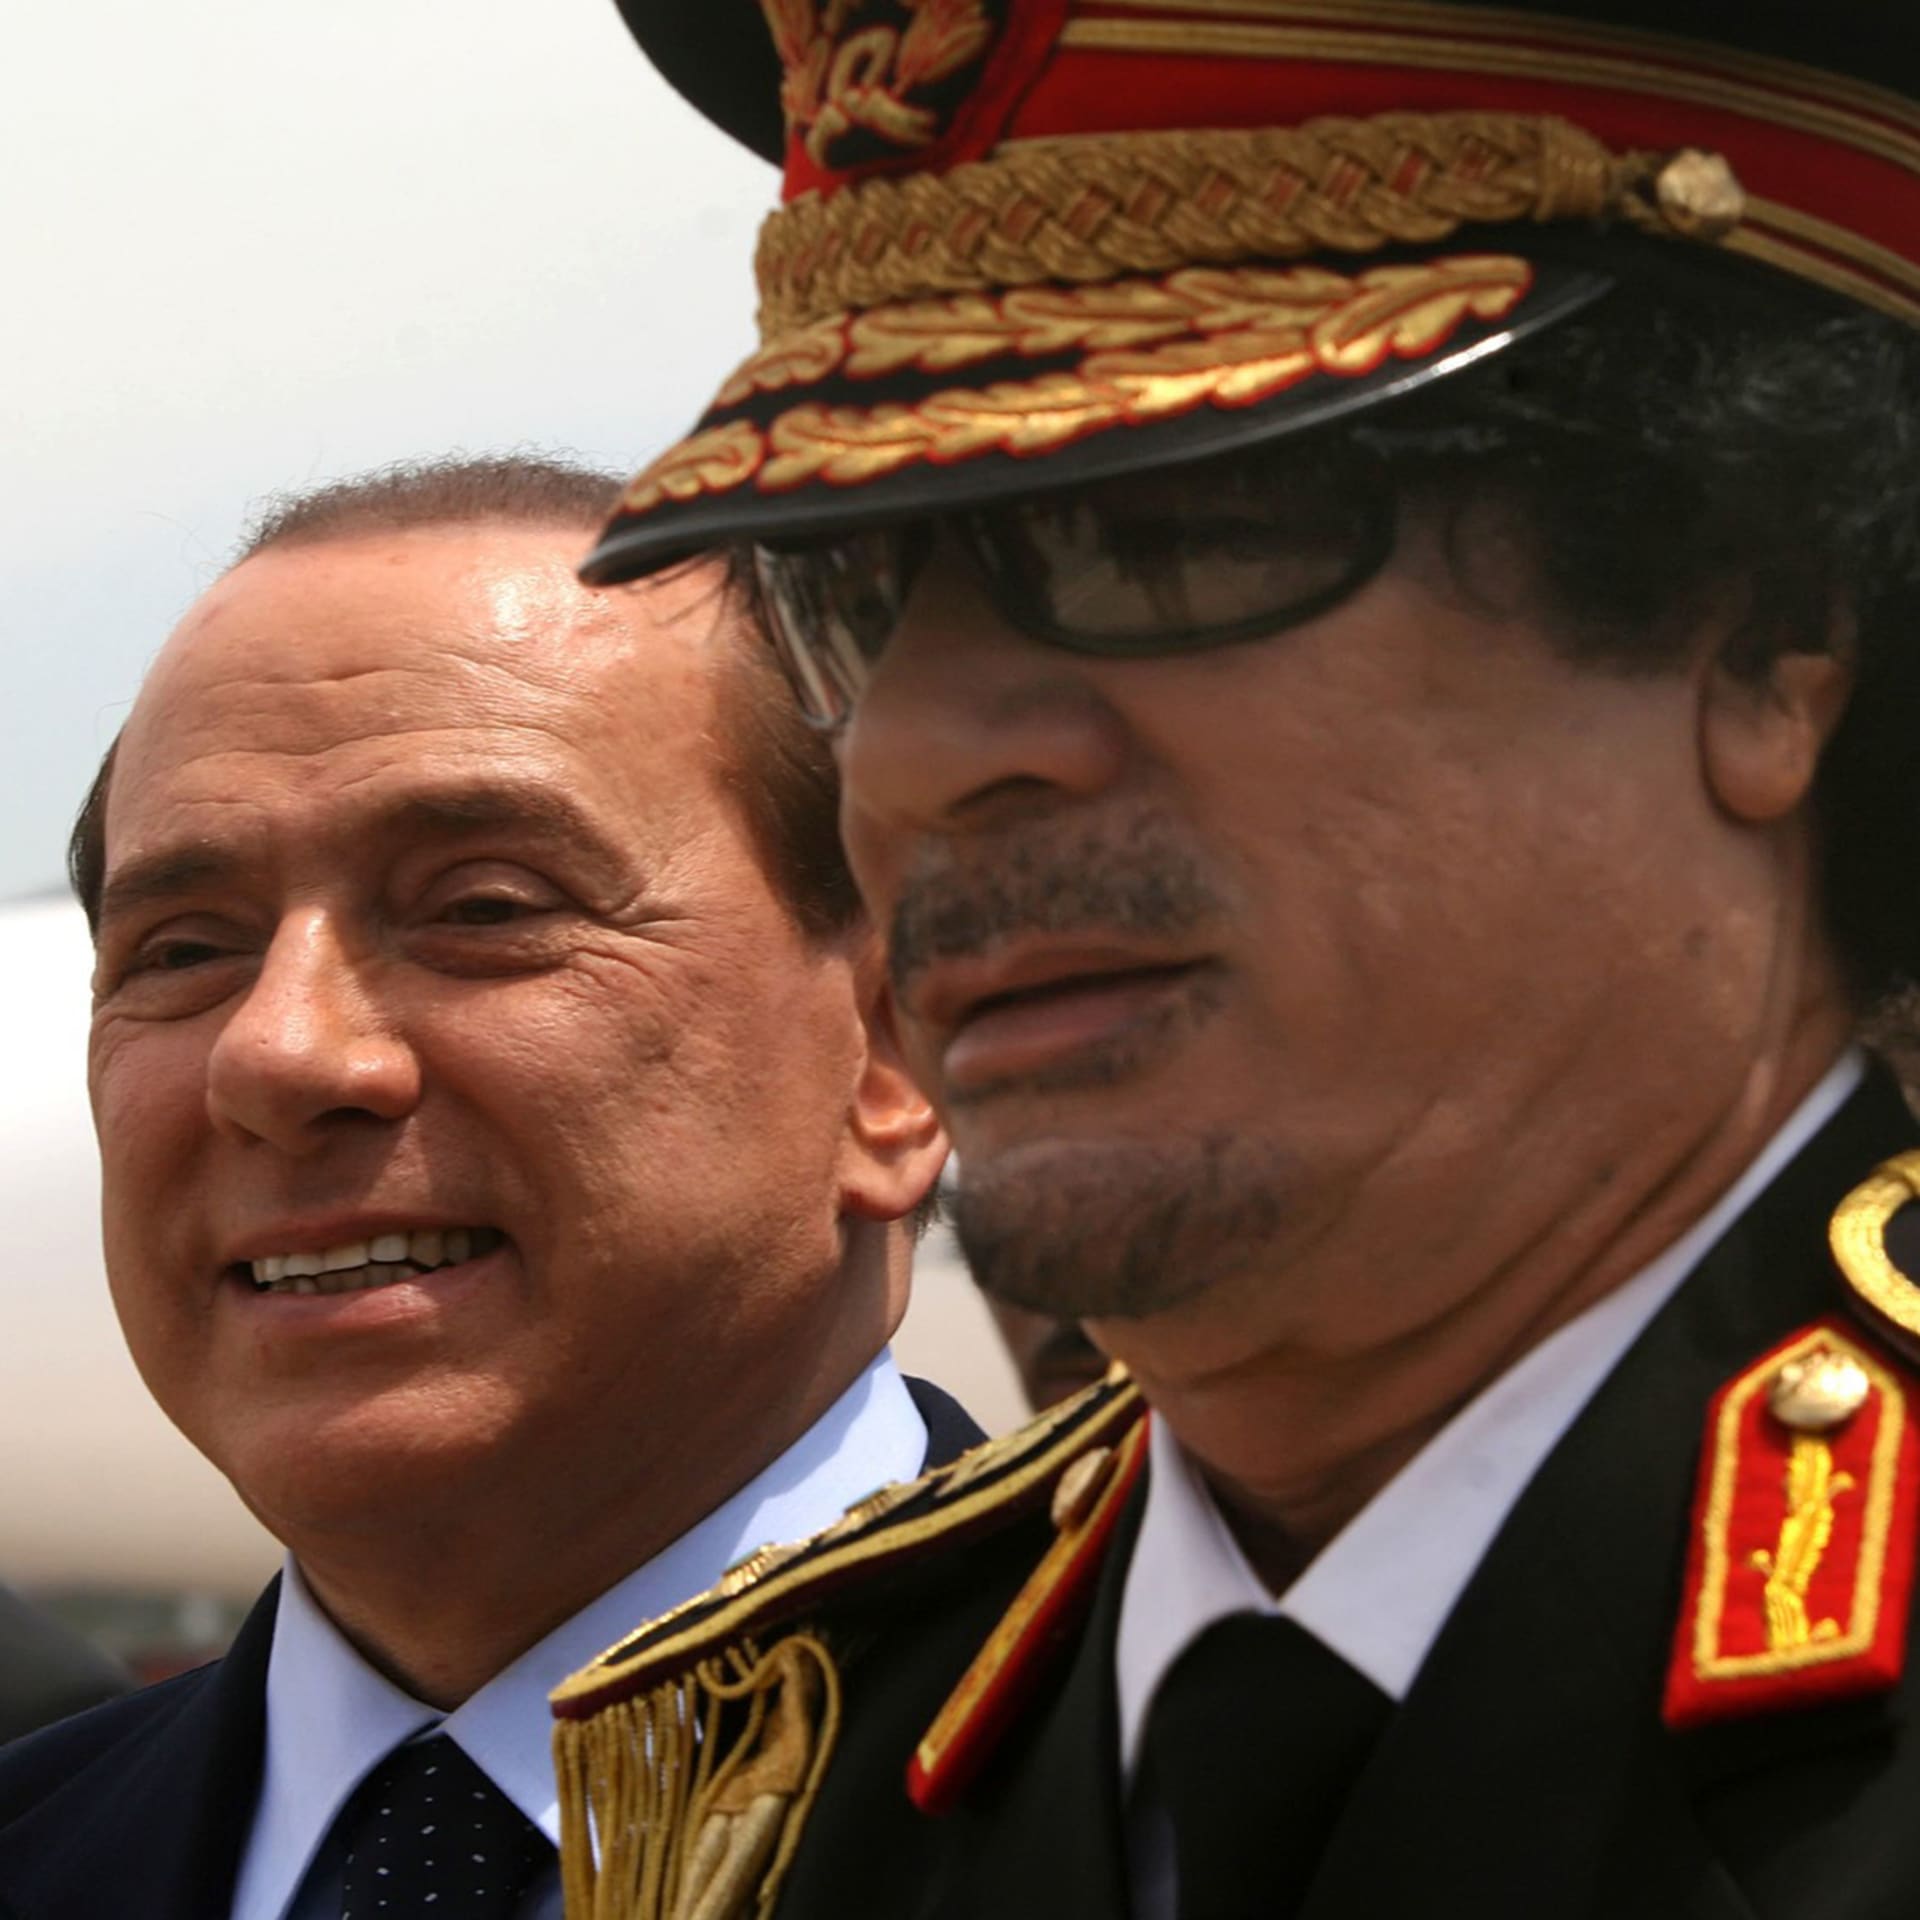 Berlusconi jako první premiér členské země NATO a EU navštívil Libyi.